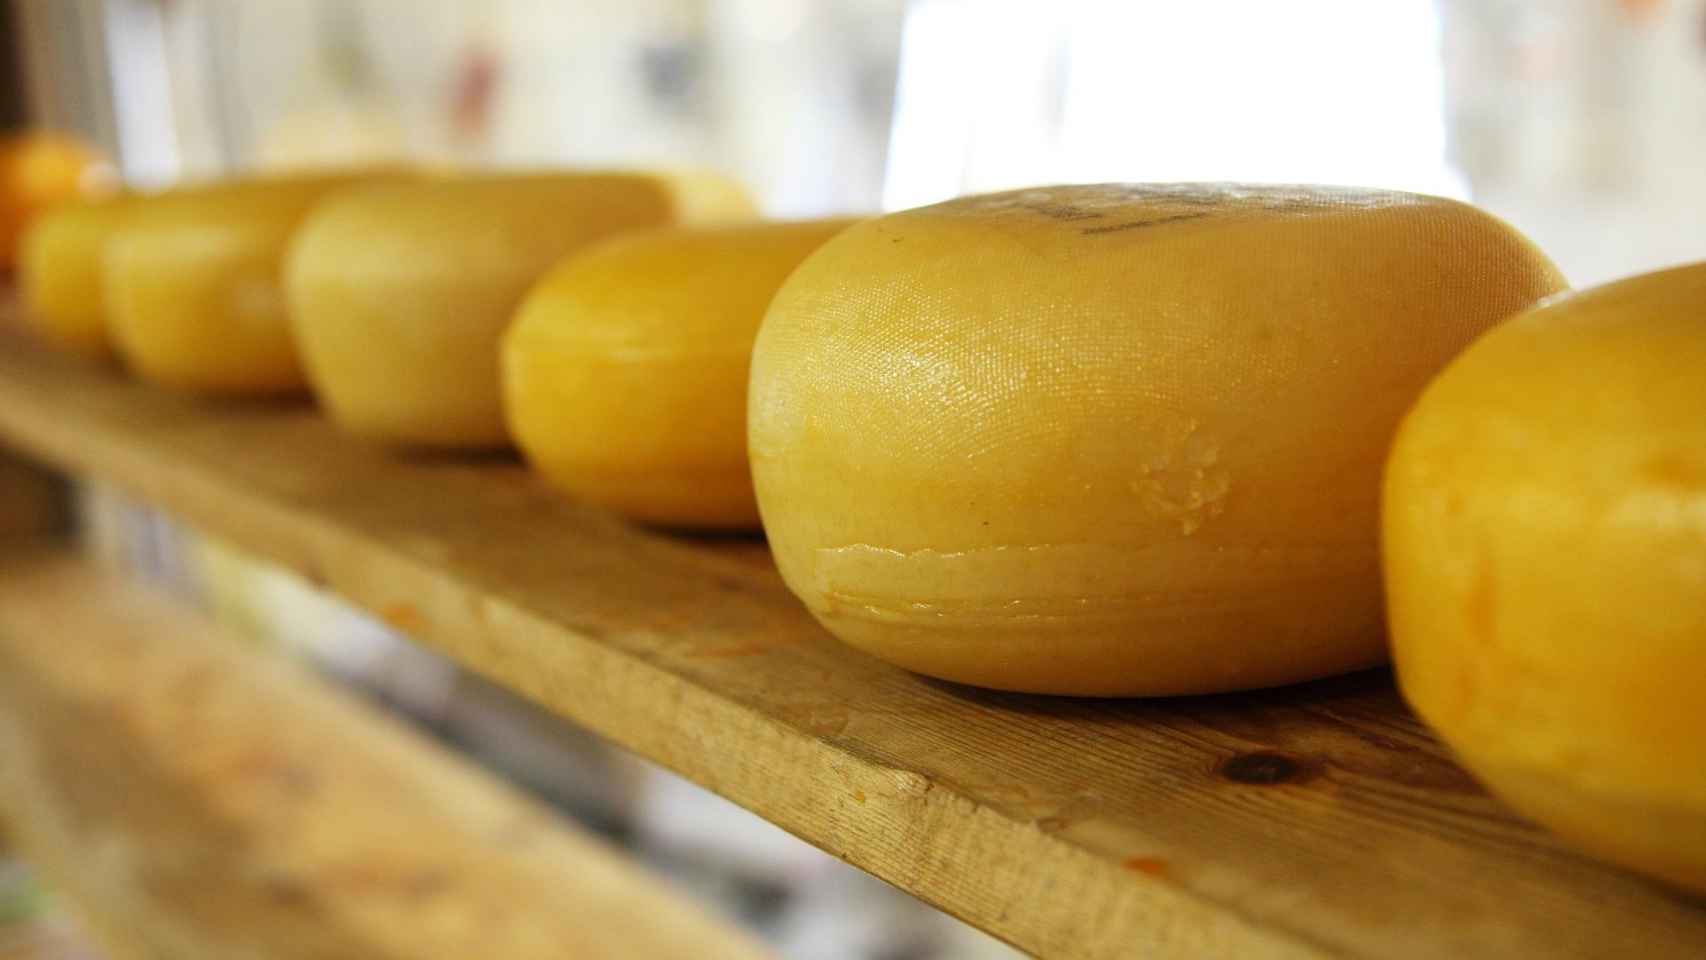 Imagen tomada de quesos artesanales / PIXABAY